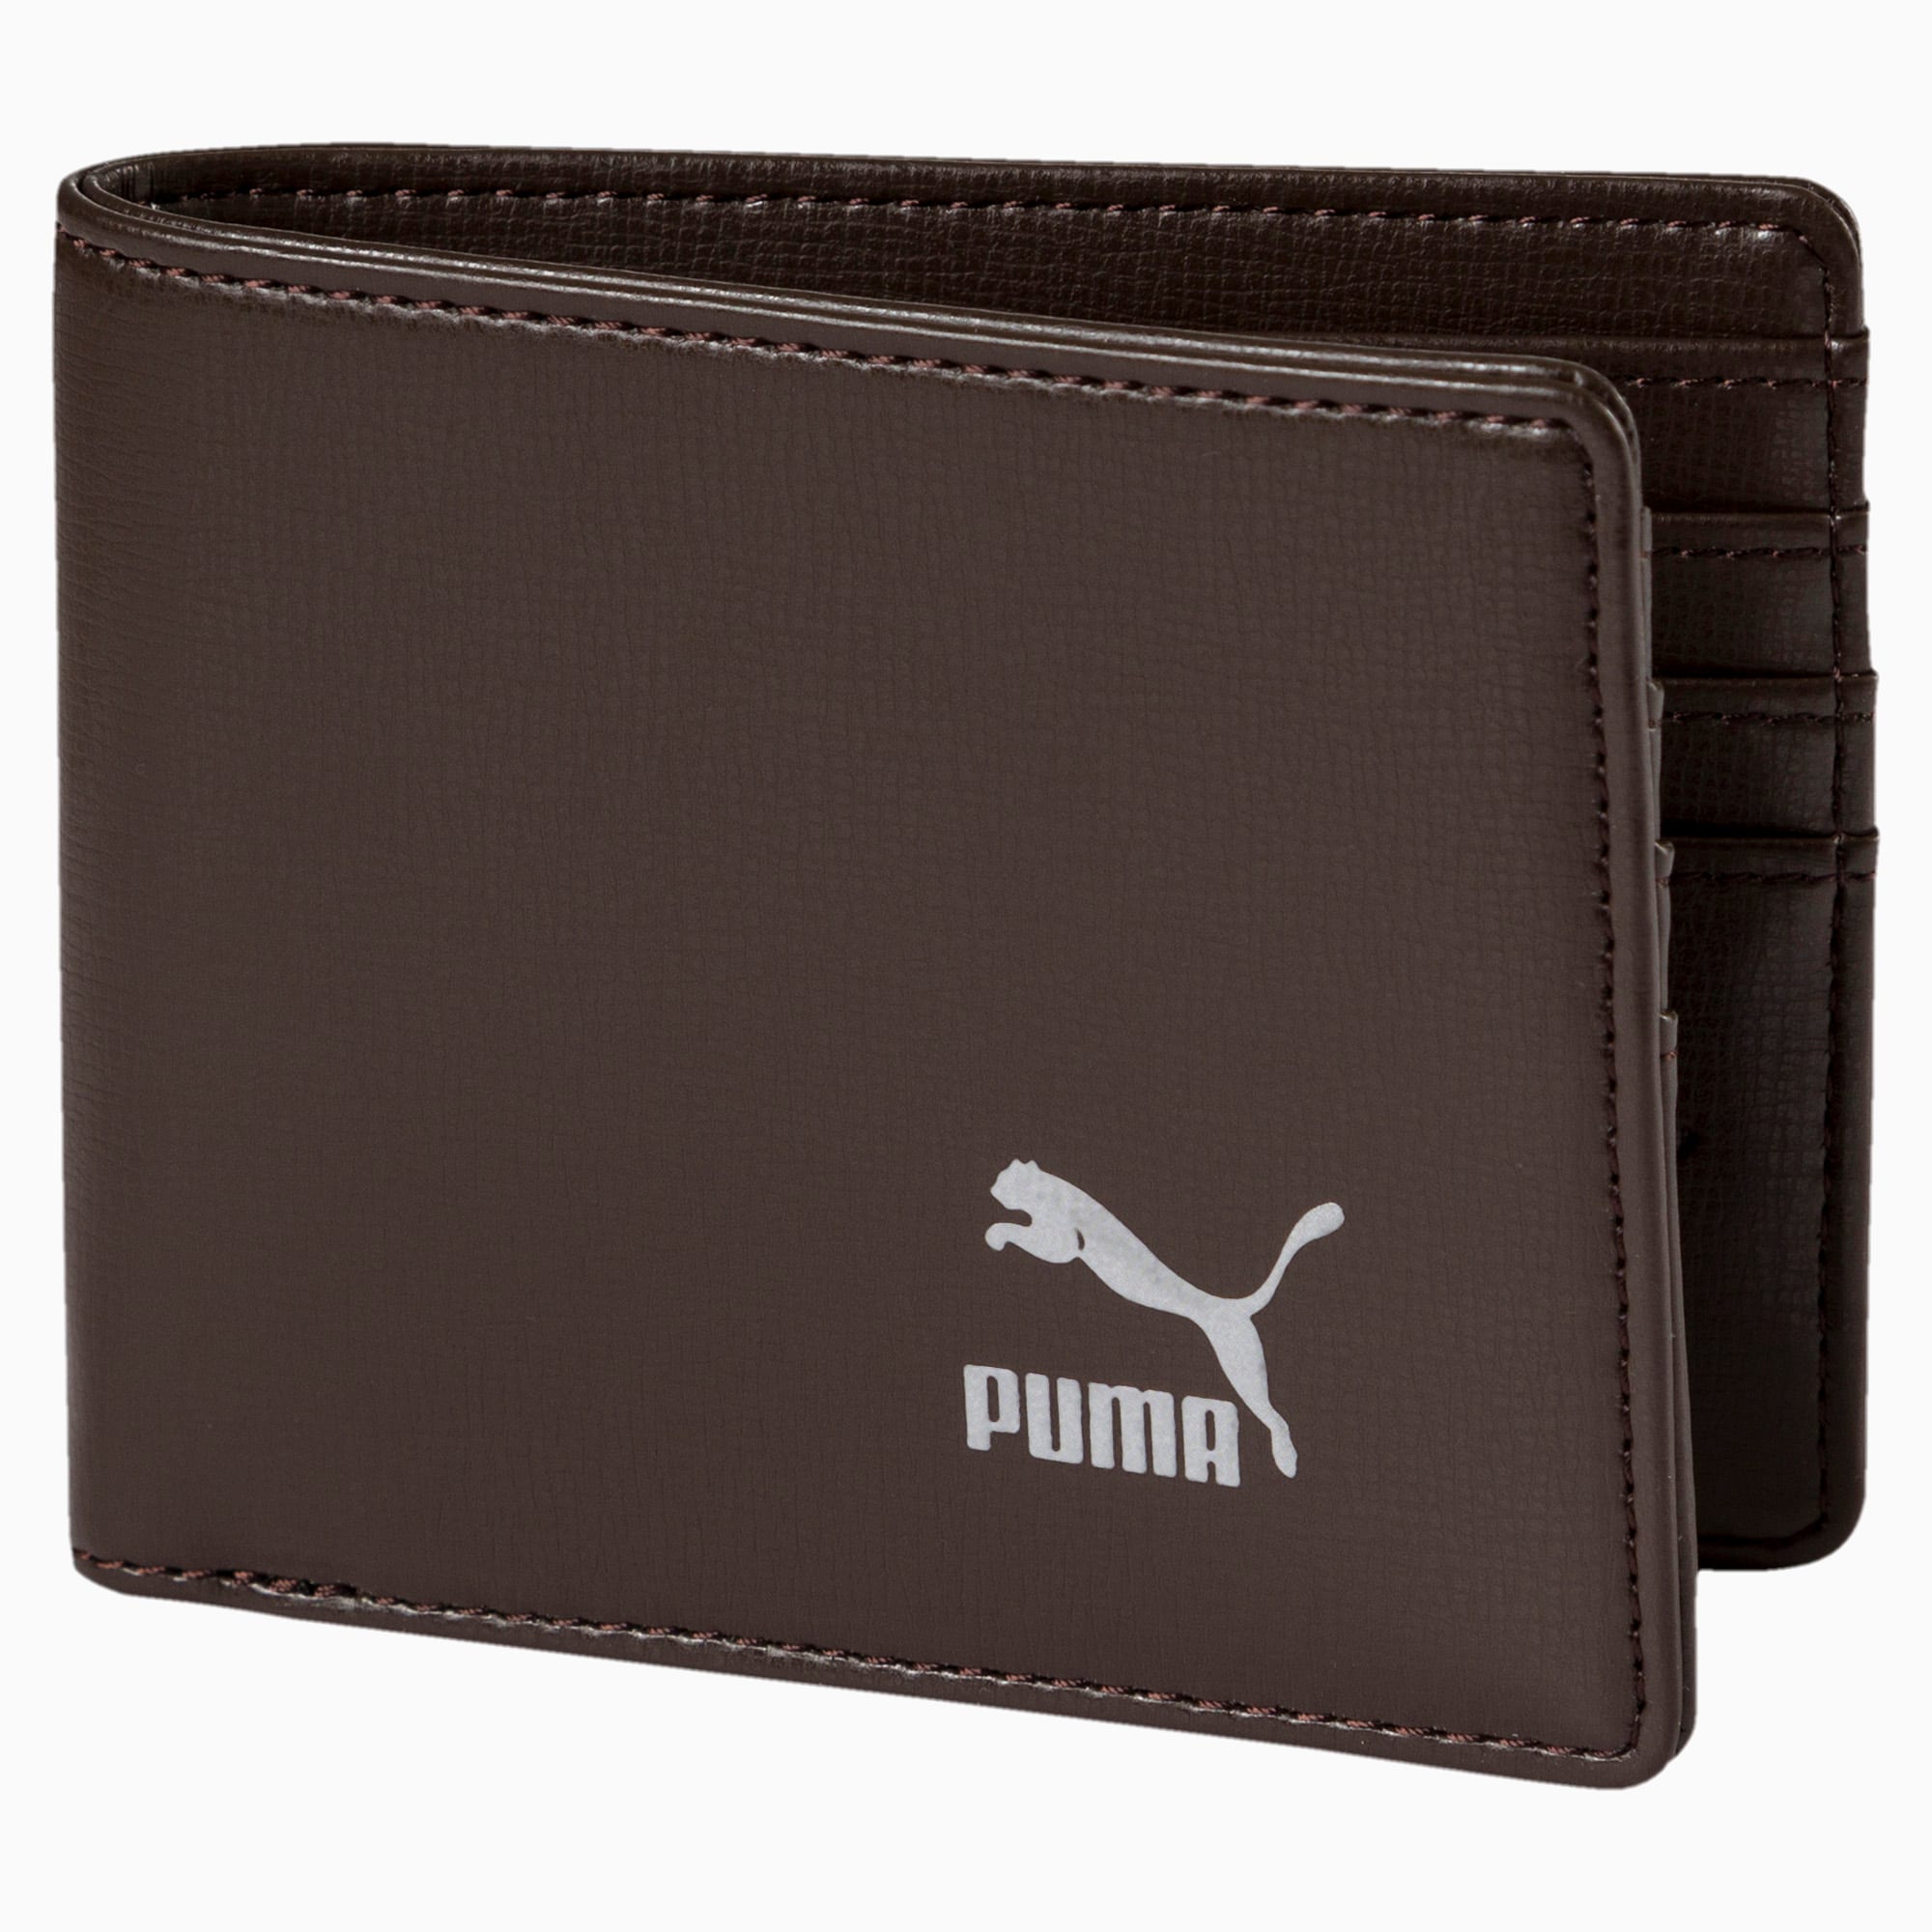 puma originals billfold wallet